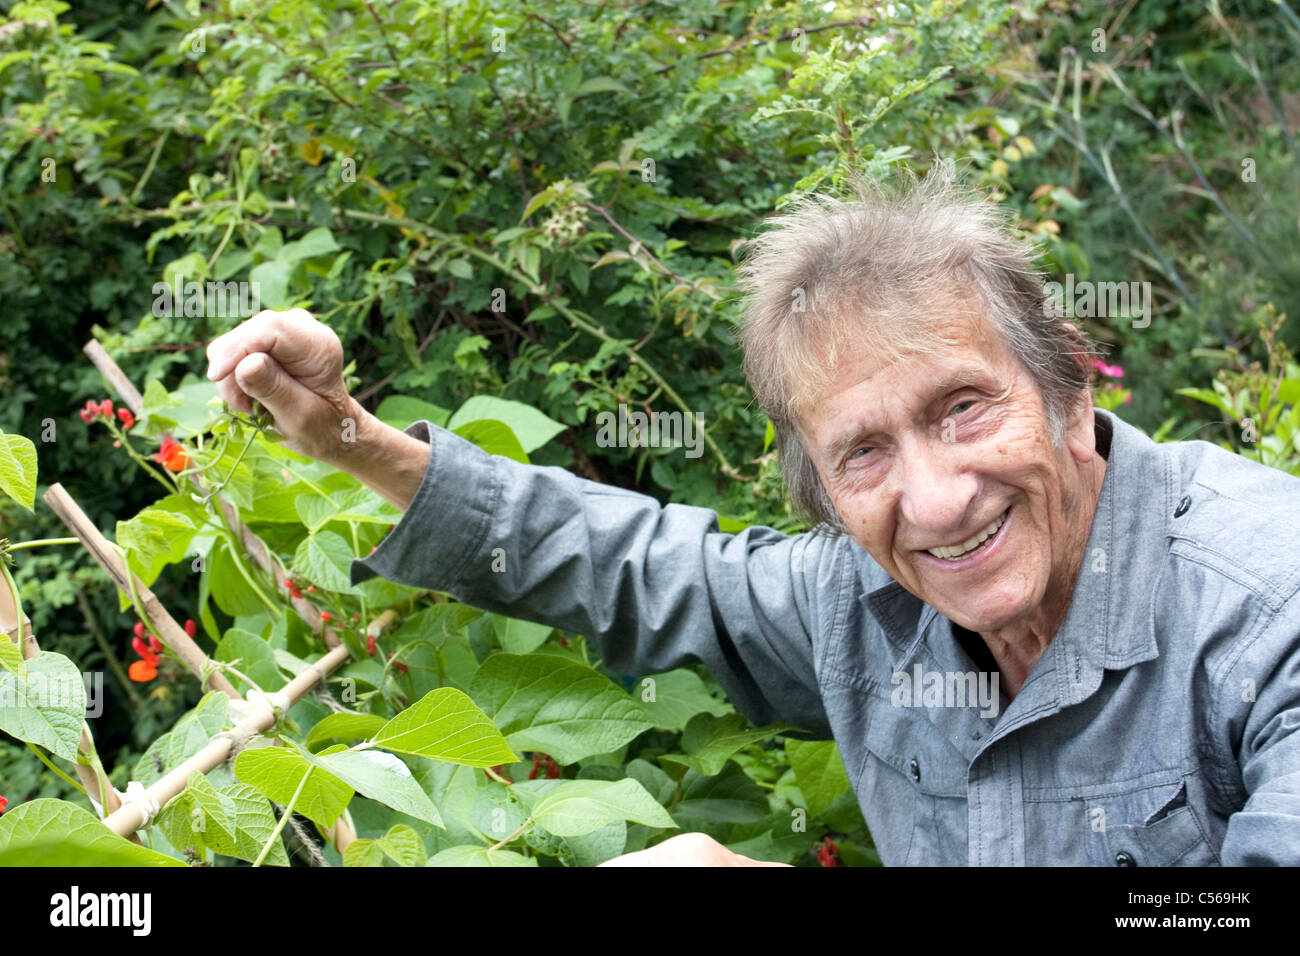 Les haricots d'Espagne sur la plante avec man smiling Banque D'Images